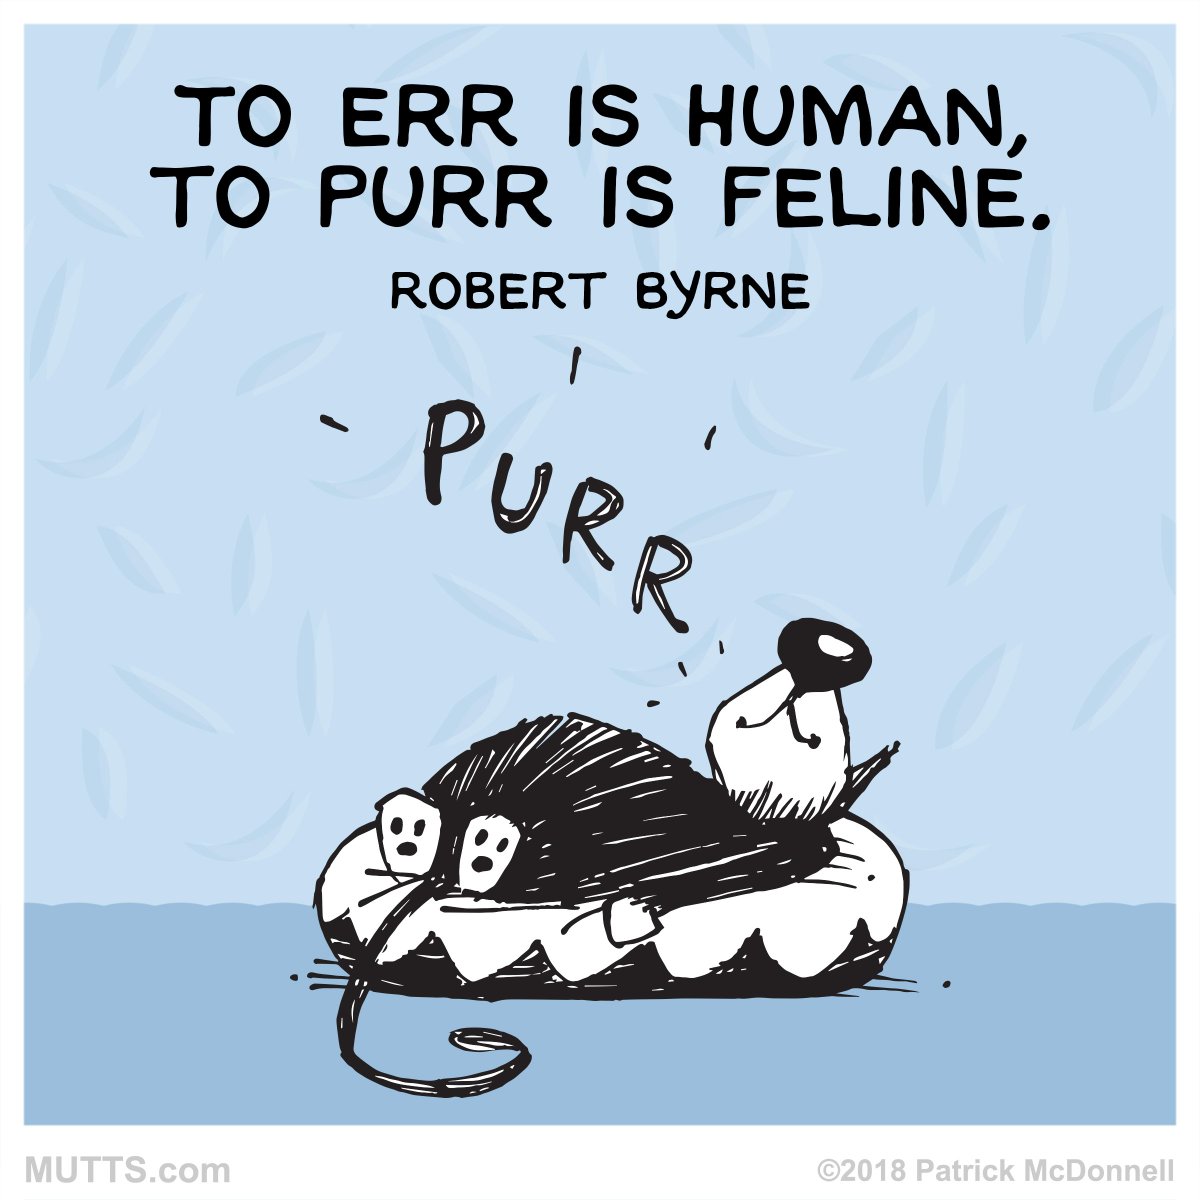 Purrr is Feline